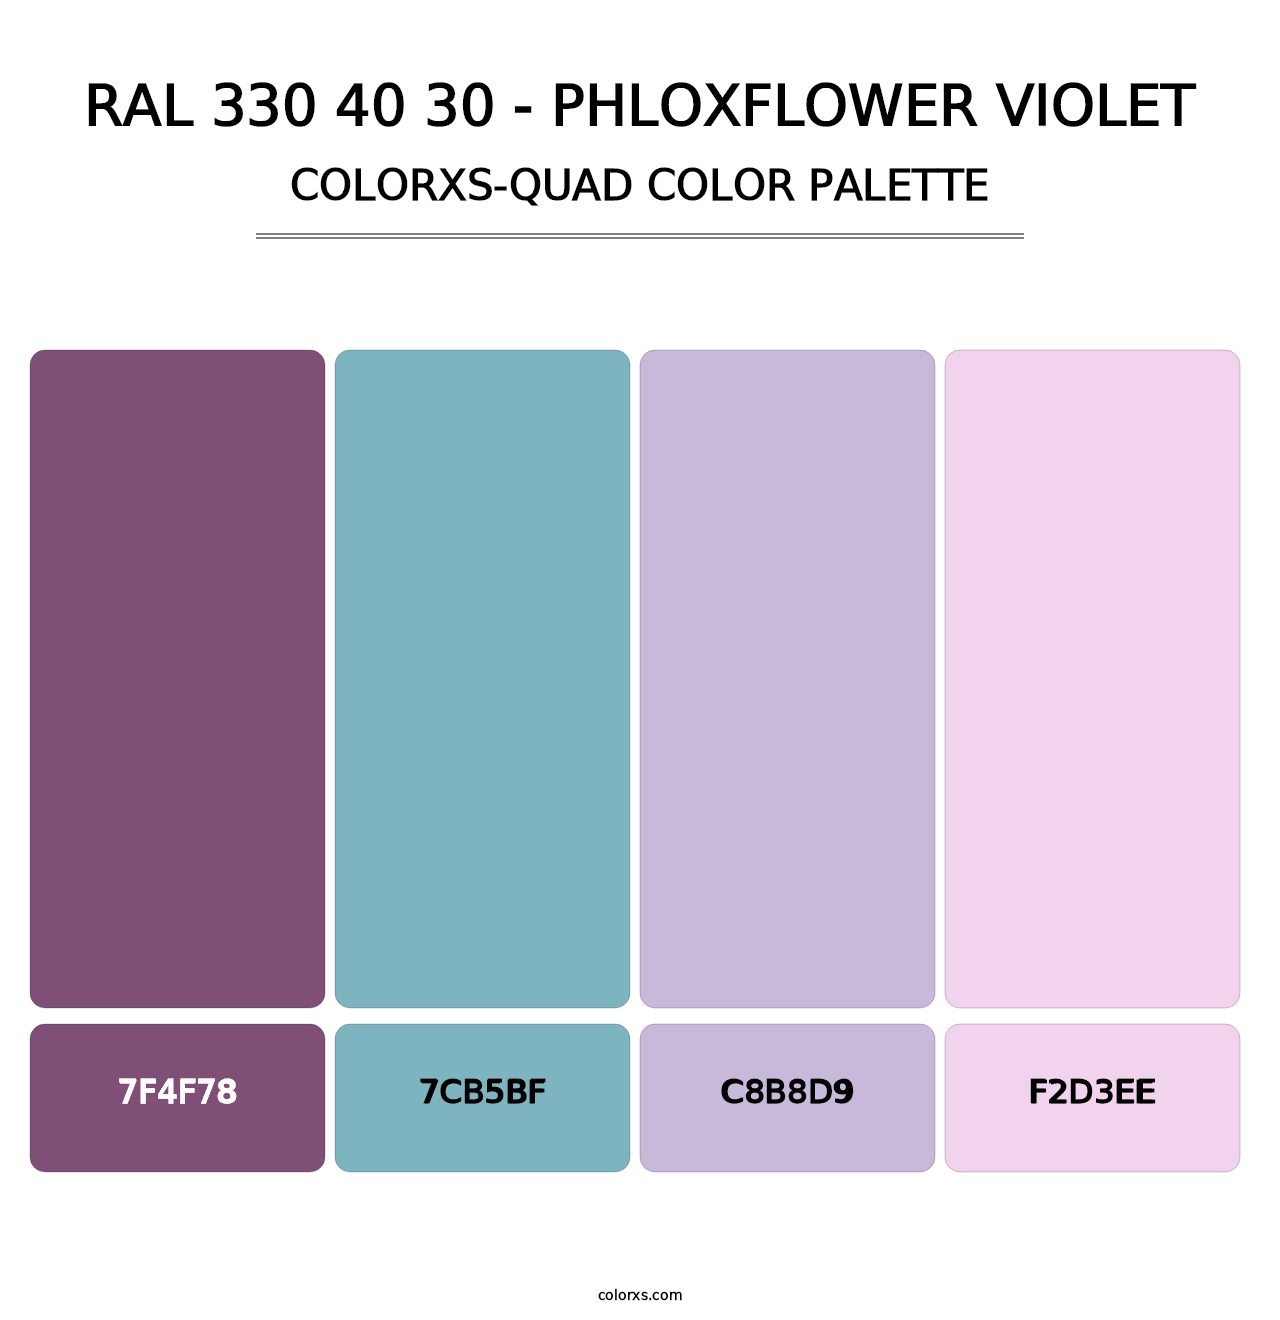 RAL 330 40 30 - Phloxflower Violet - Colorxs Quad Palette